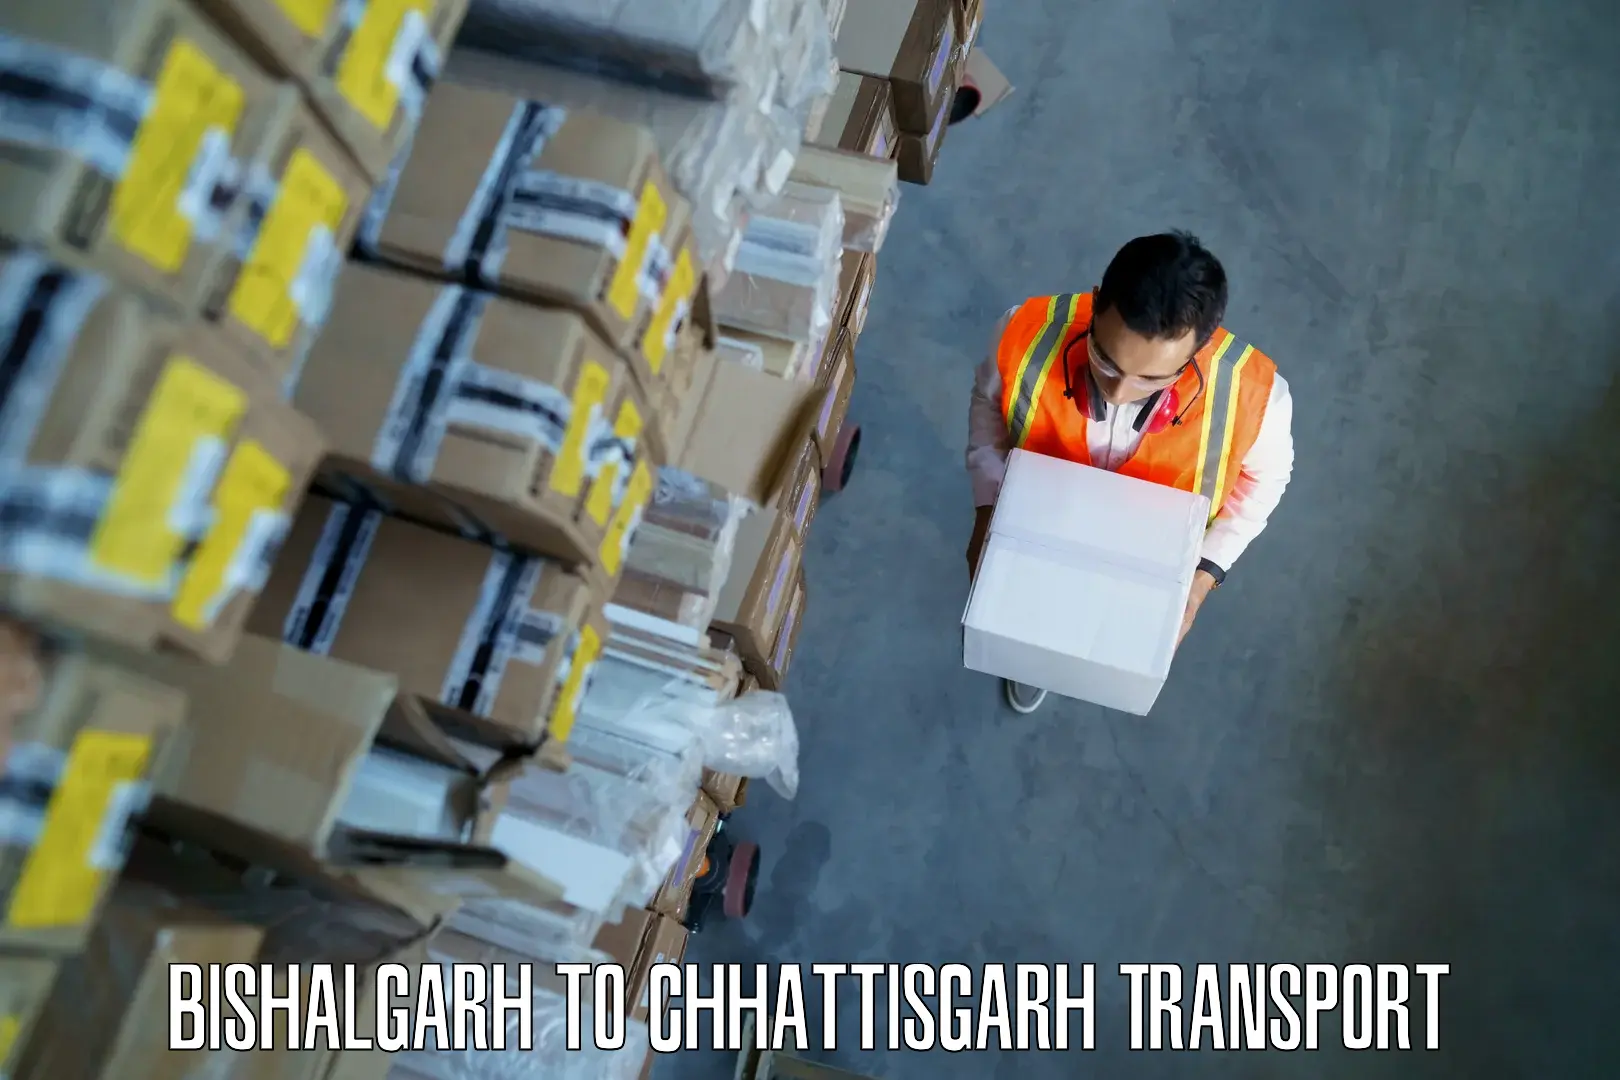 Vehicle transport services Bishalgarh to Bijapur Chhattisgarh